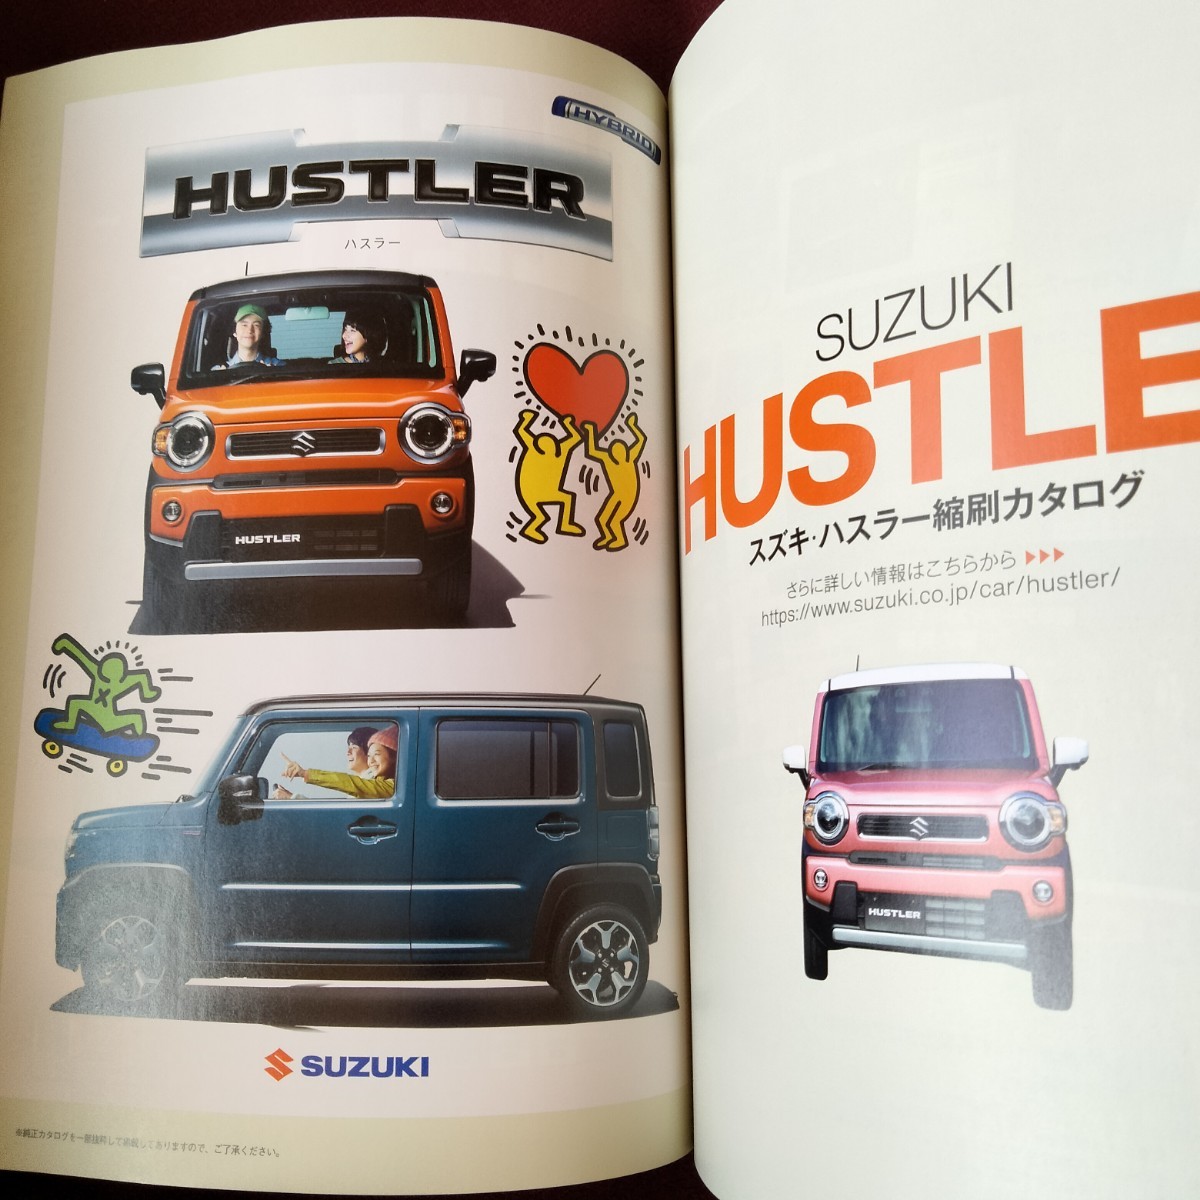  редкость! новый машина срочное сообщение Suzuki Hustler 97 страница 2020 год 3 месяц выпуск Hustler .. каталог Hustler. все Suzuki. все 